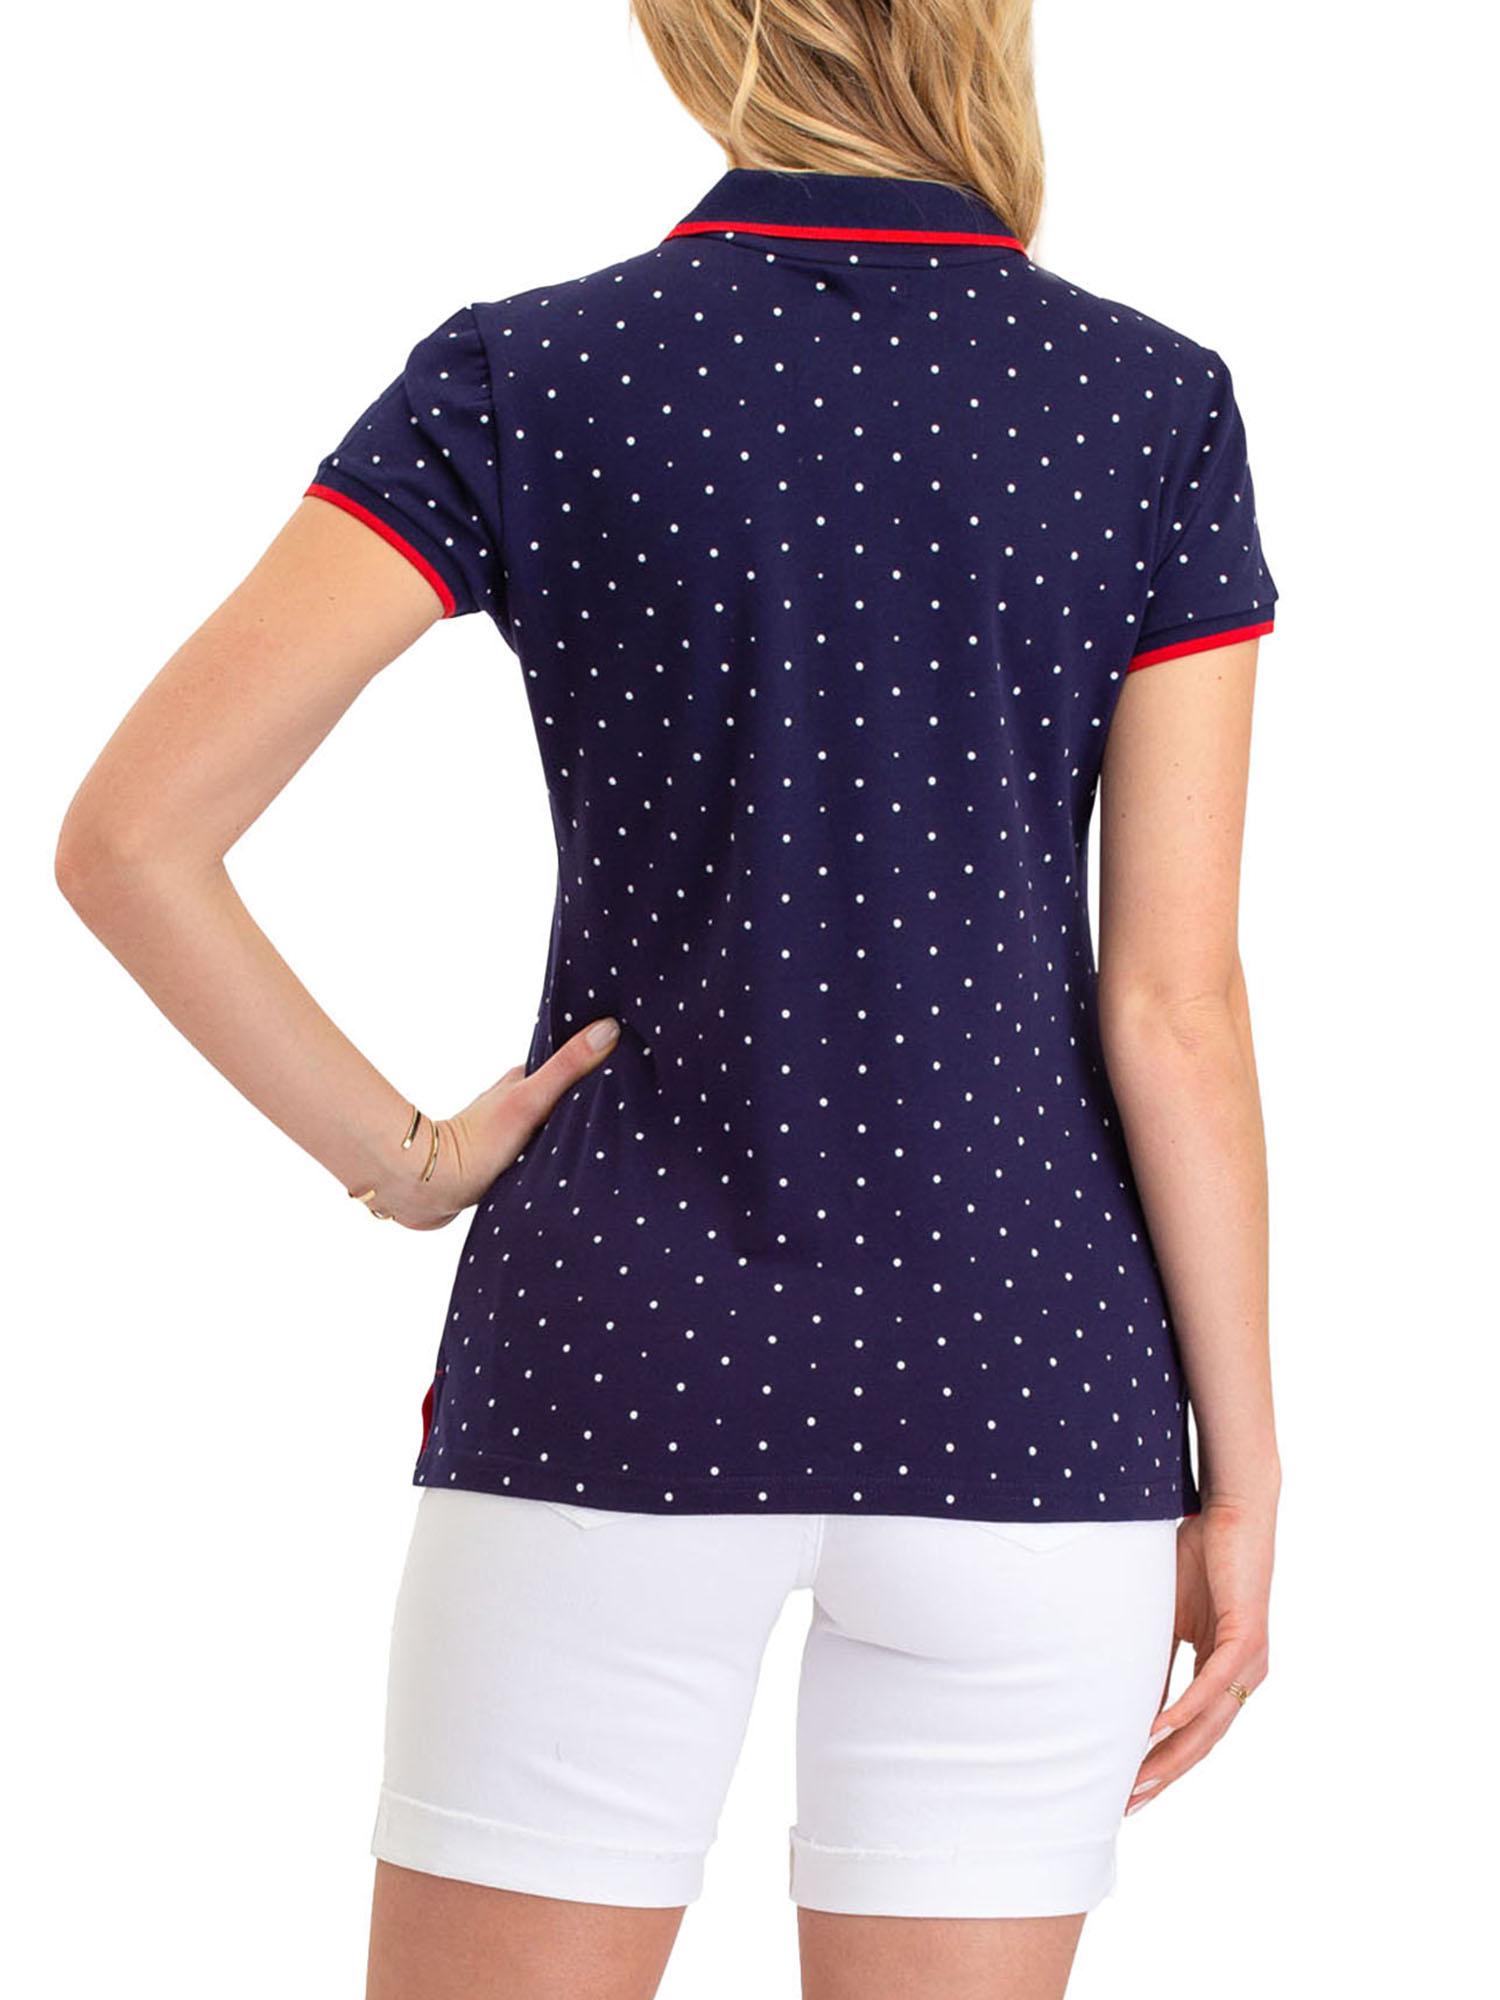 US Polo Assn. Classic Polo Dot Pique Short Sleeve Shirt, Women's - image 2 of 4